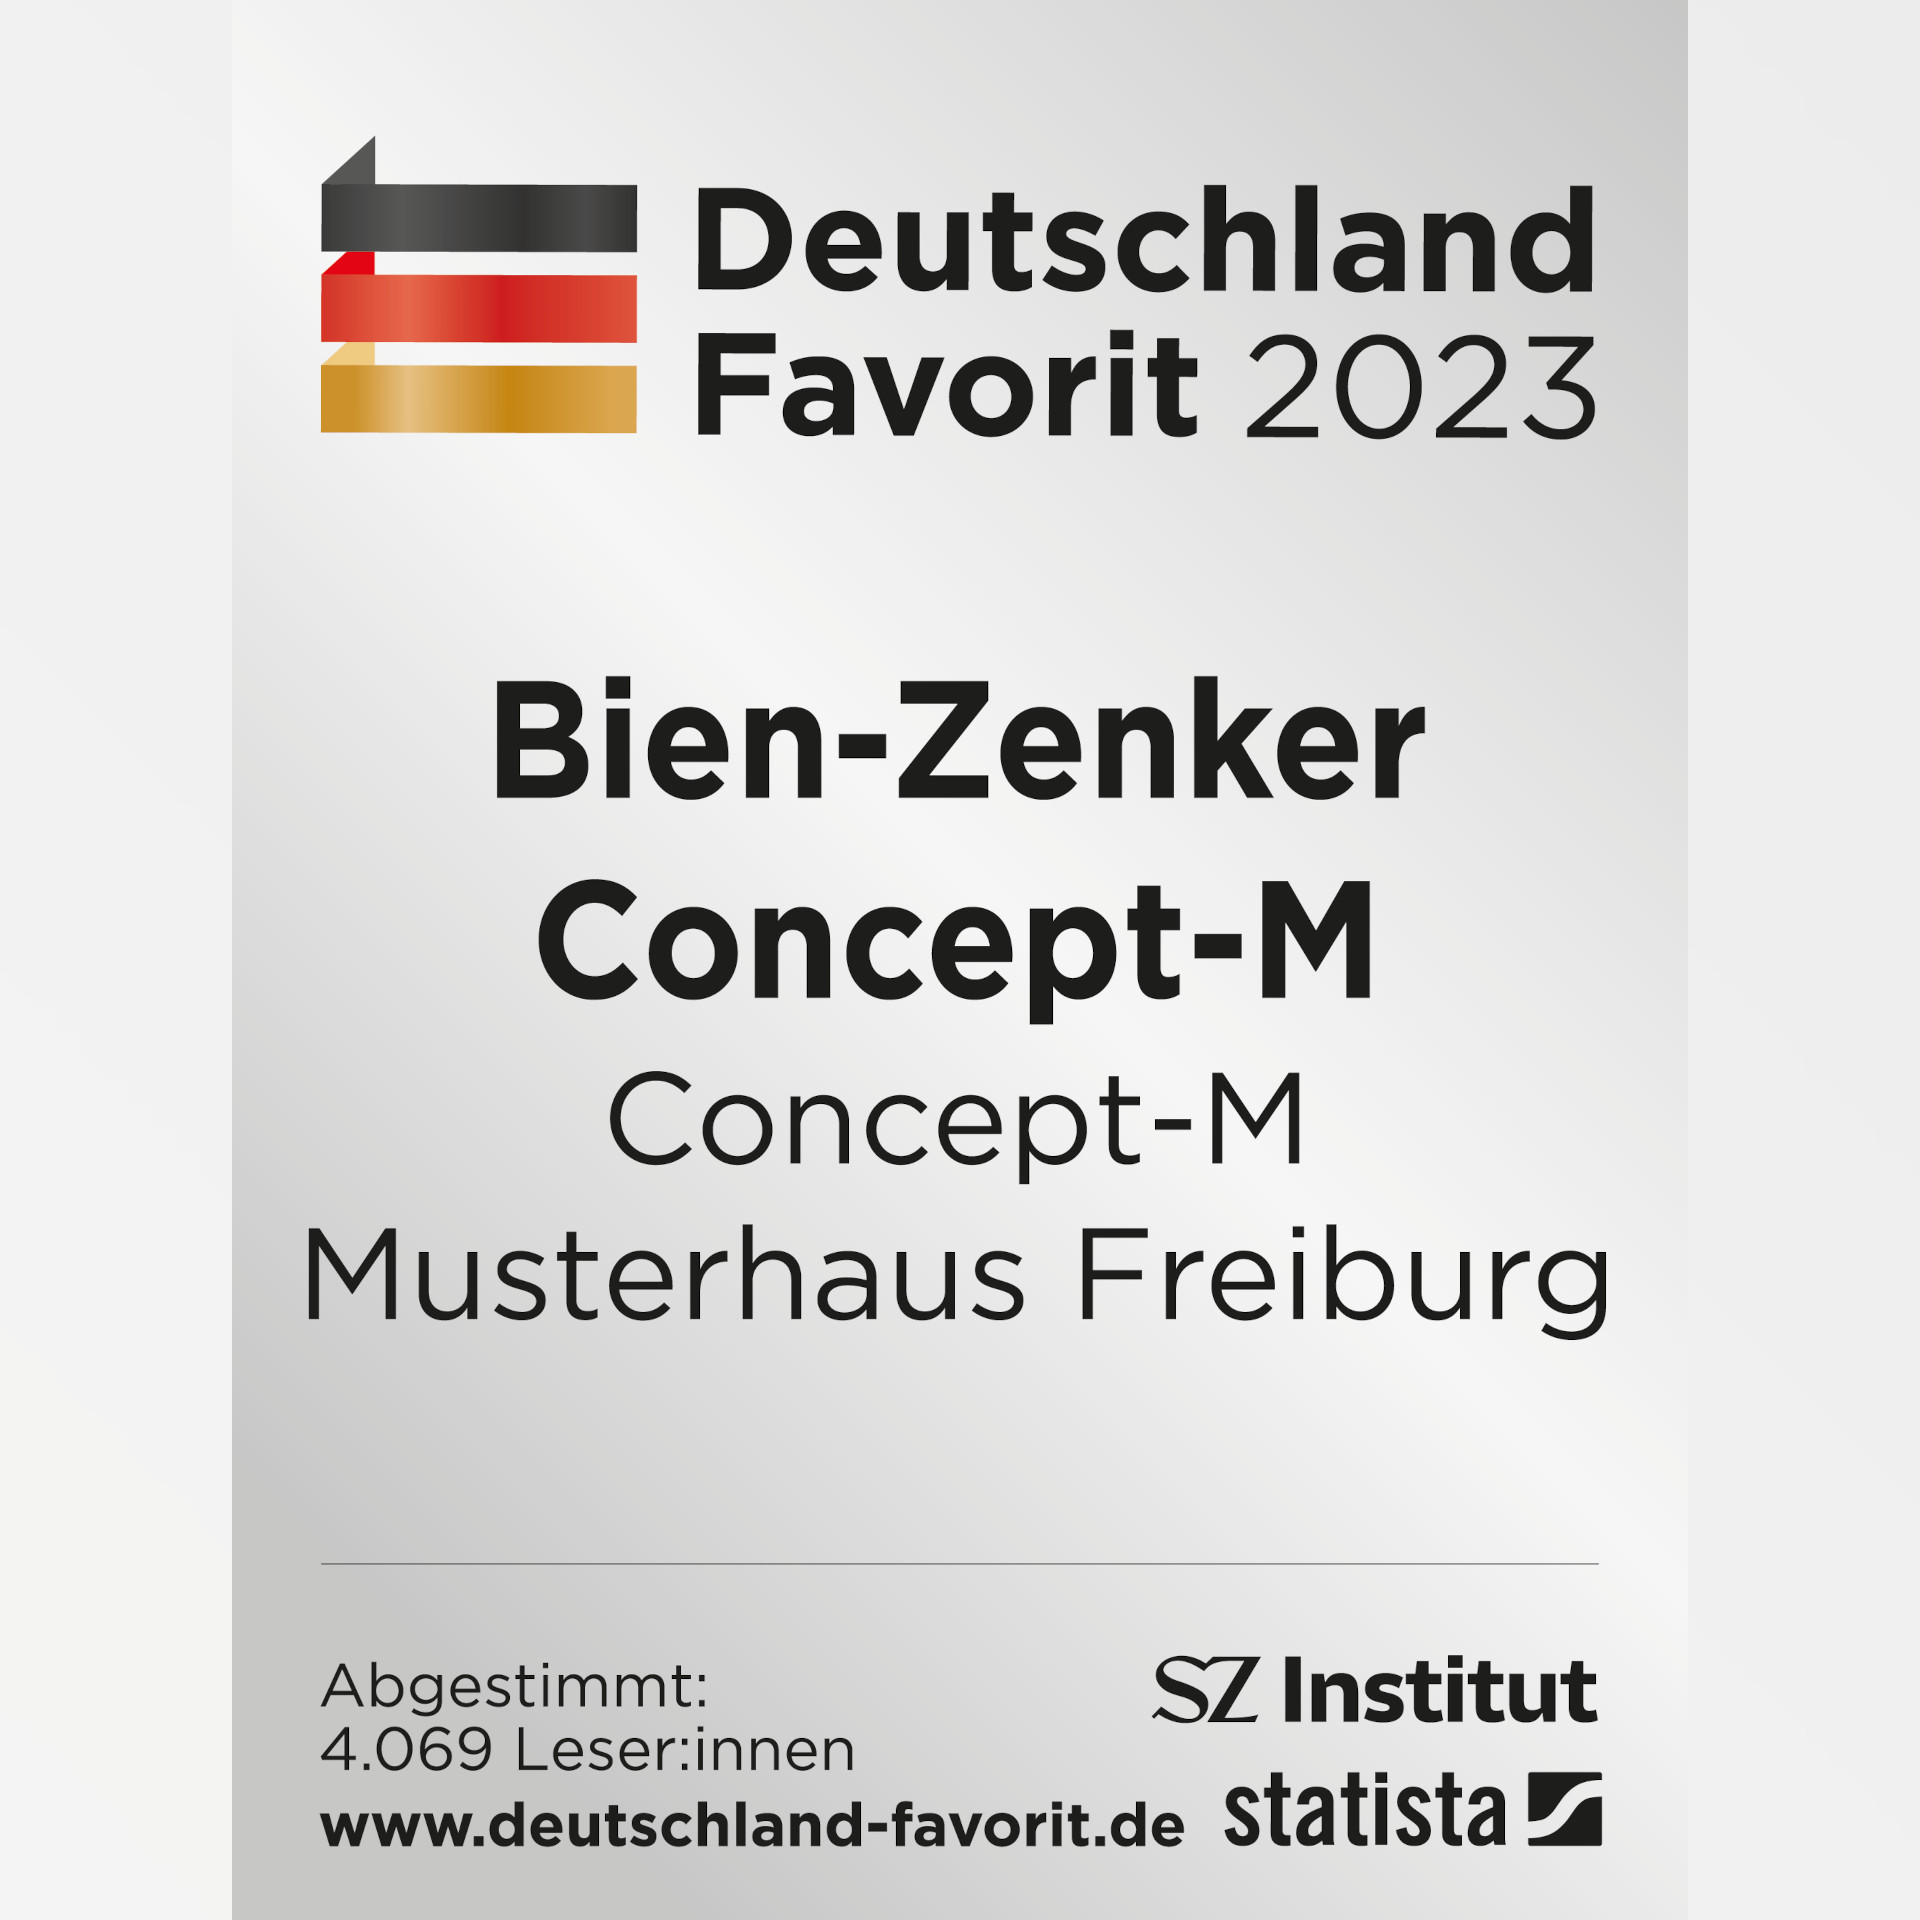 Alles tiptopp im Bien-Zenker Musterhaus Freiburg: Auszeichnung bei Deutschland Favorit 2023